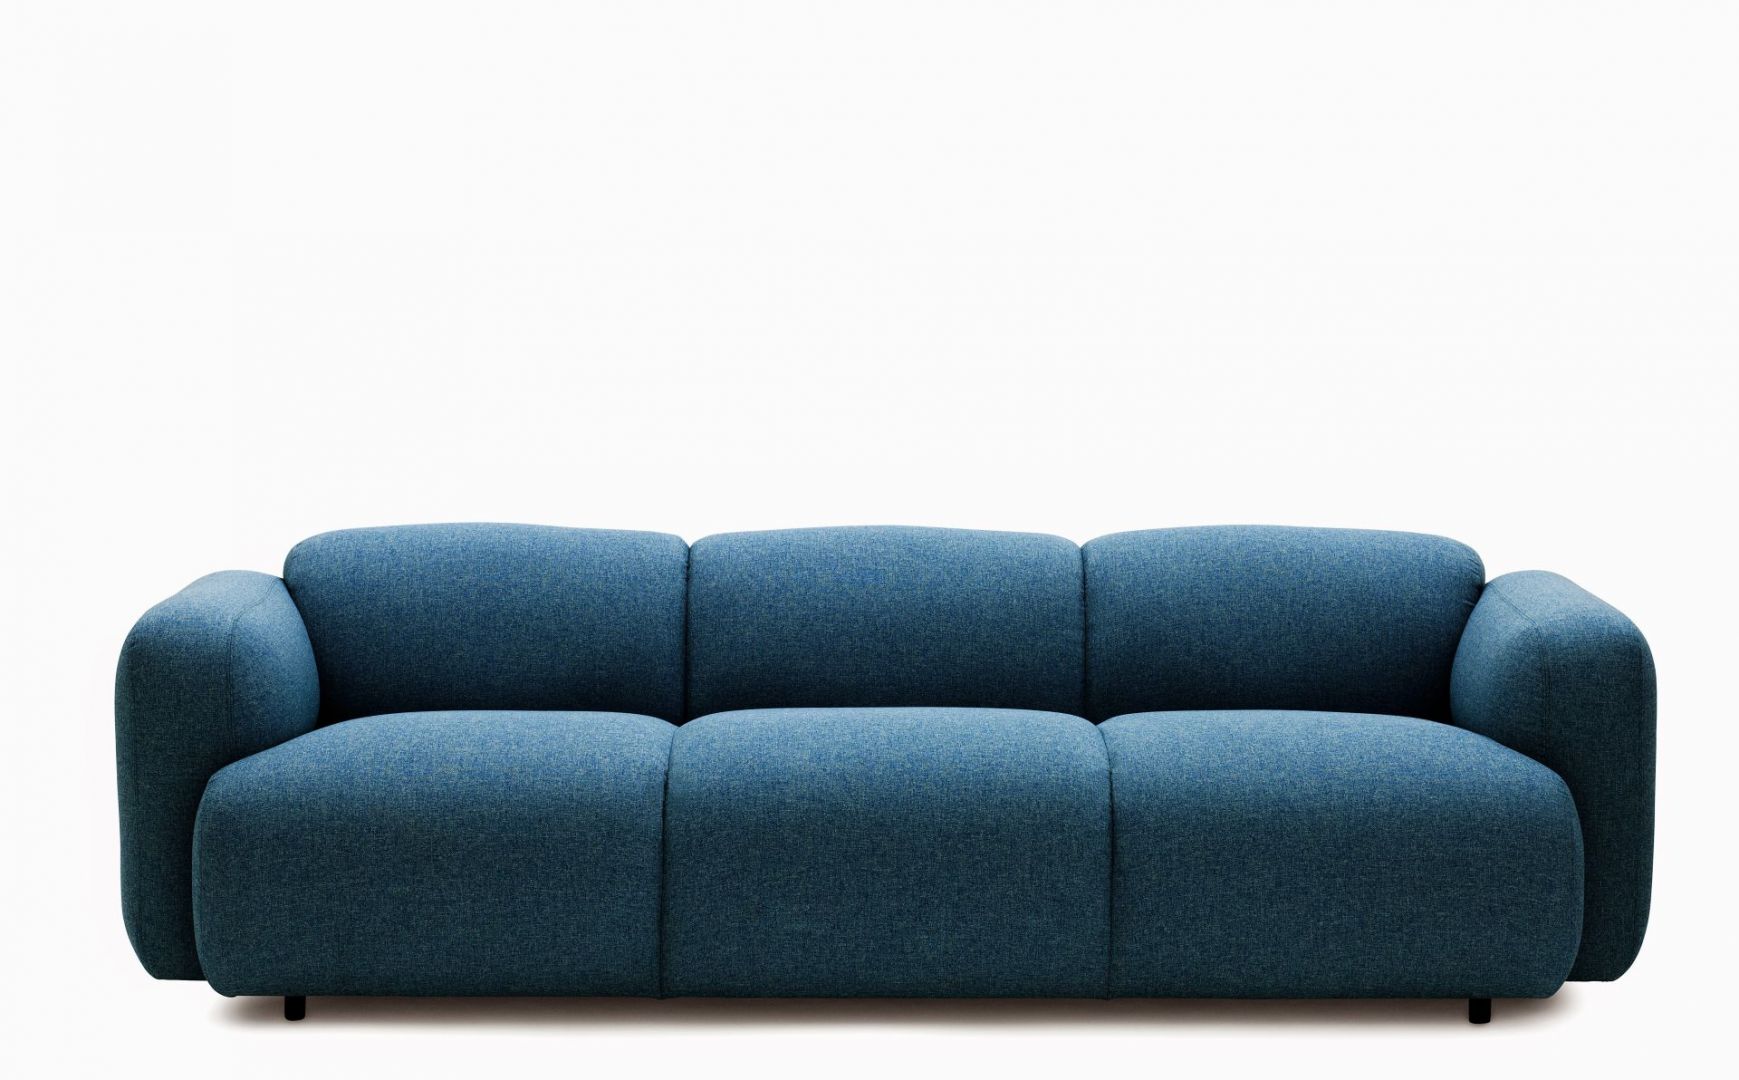 Sofa Swell ma obłe kształty. Fot. Normann Copenhagen